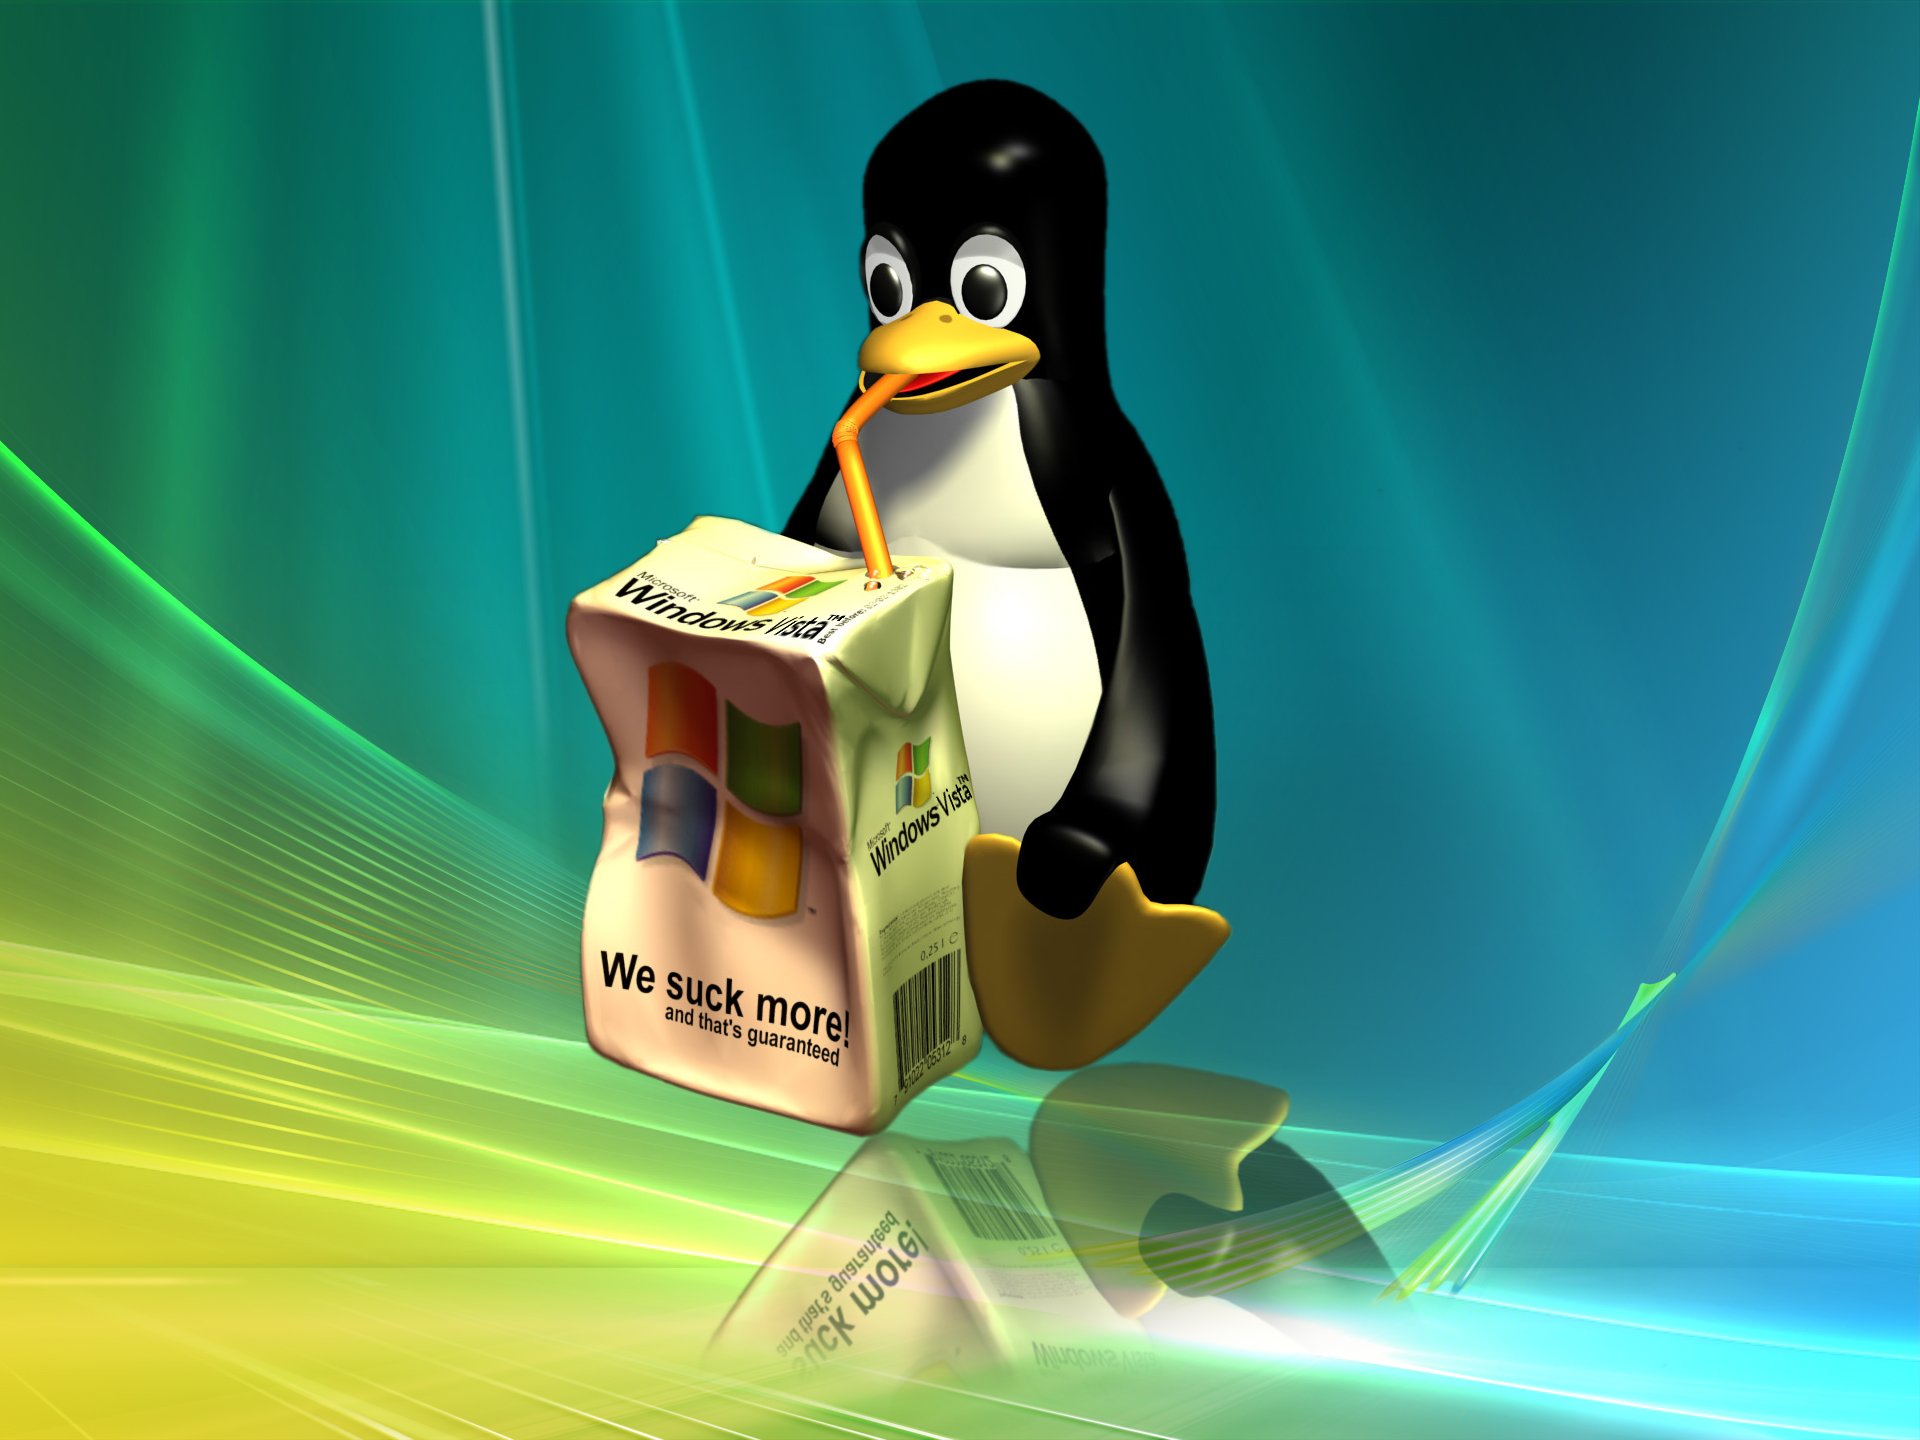 Windows Vs Linux Penguin Car Pictures